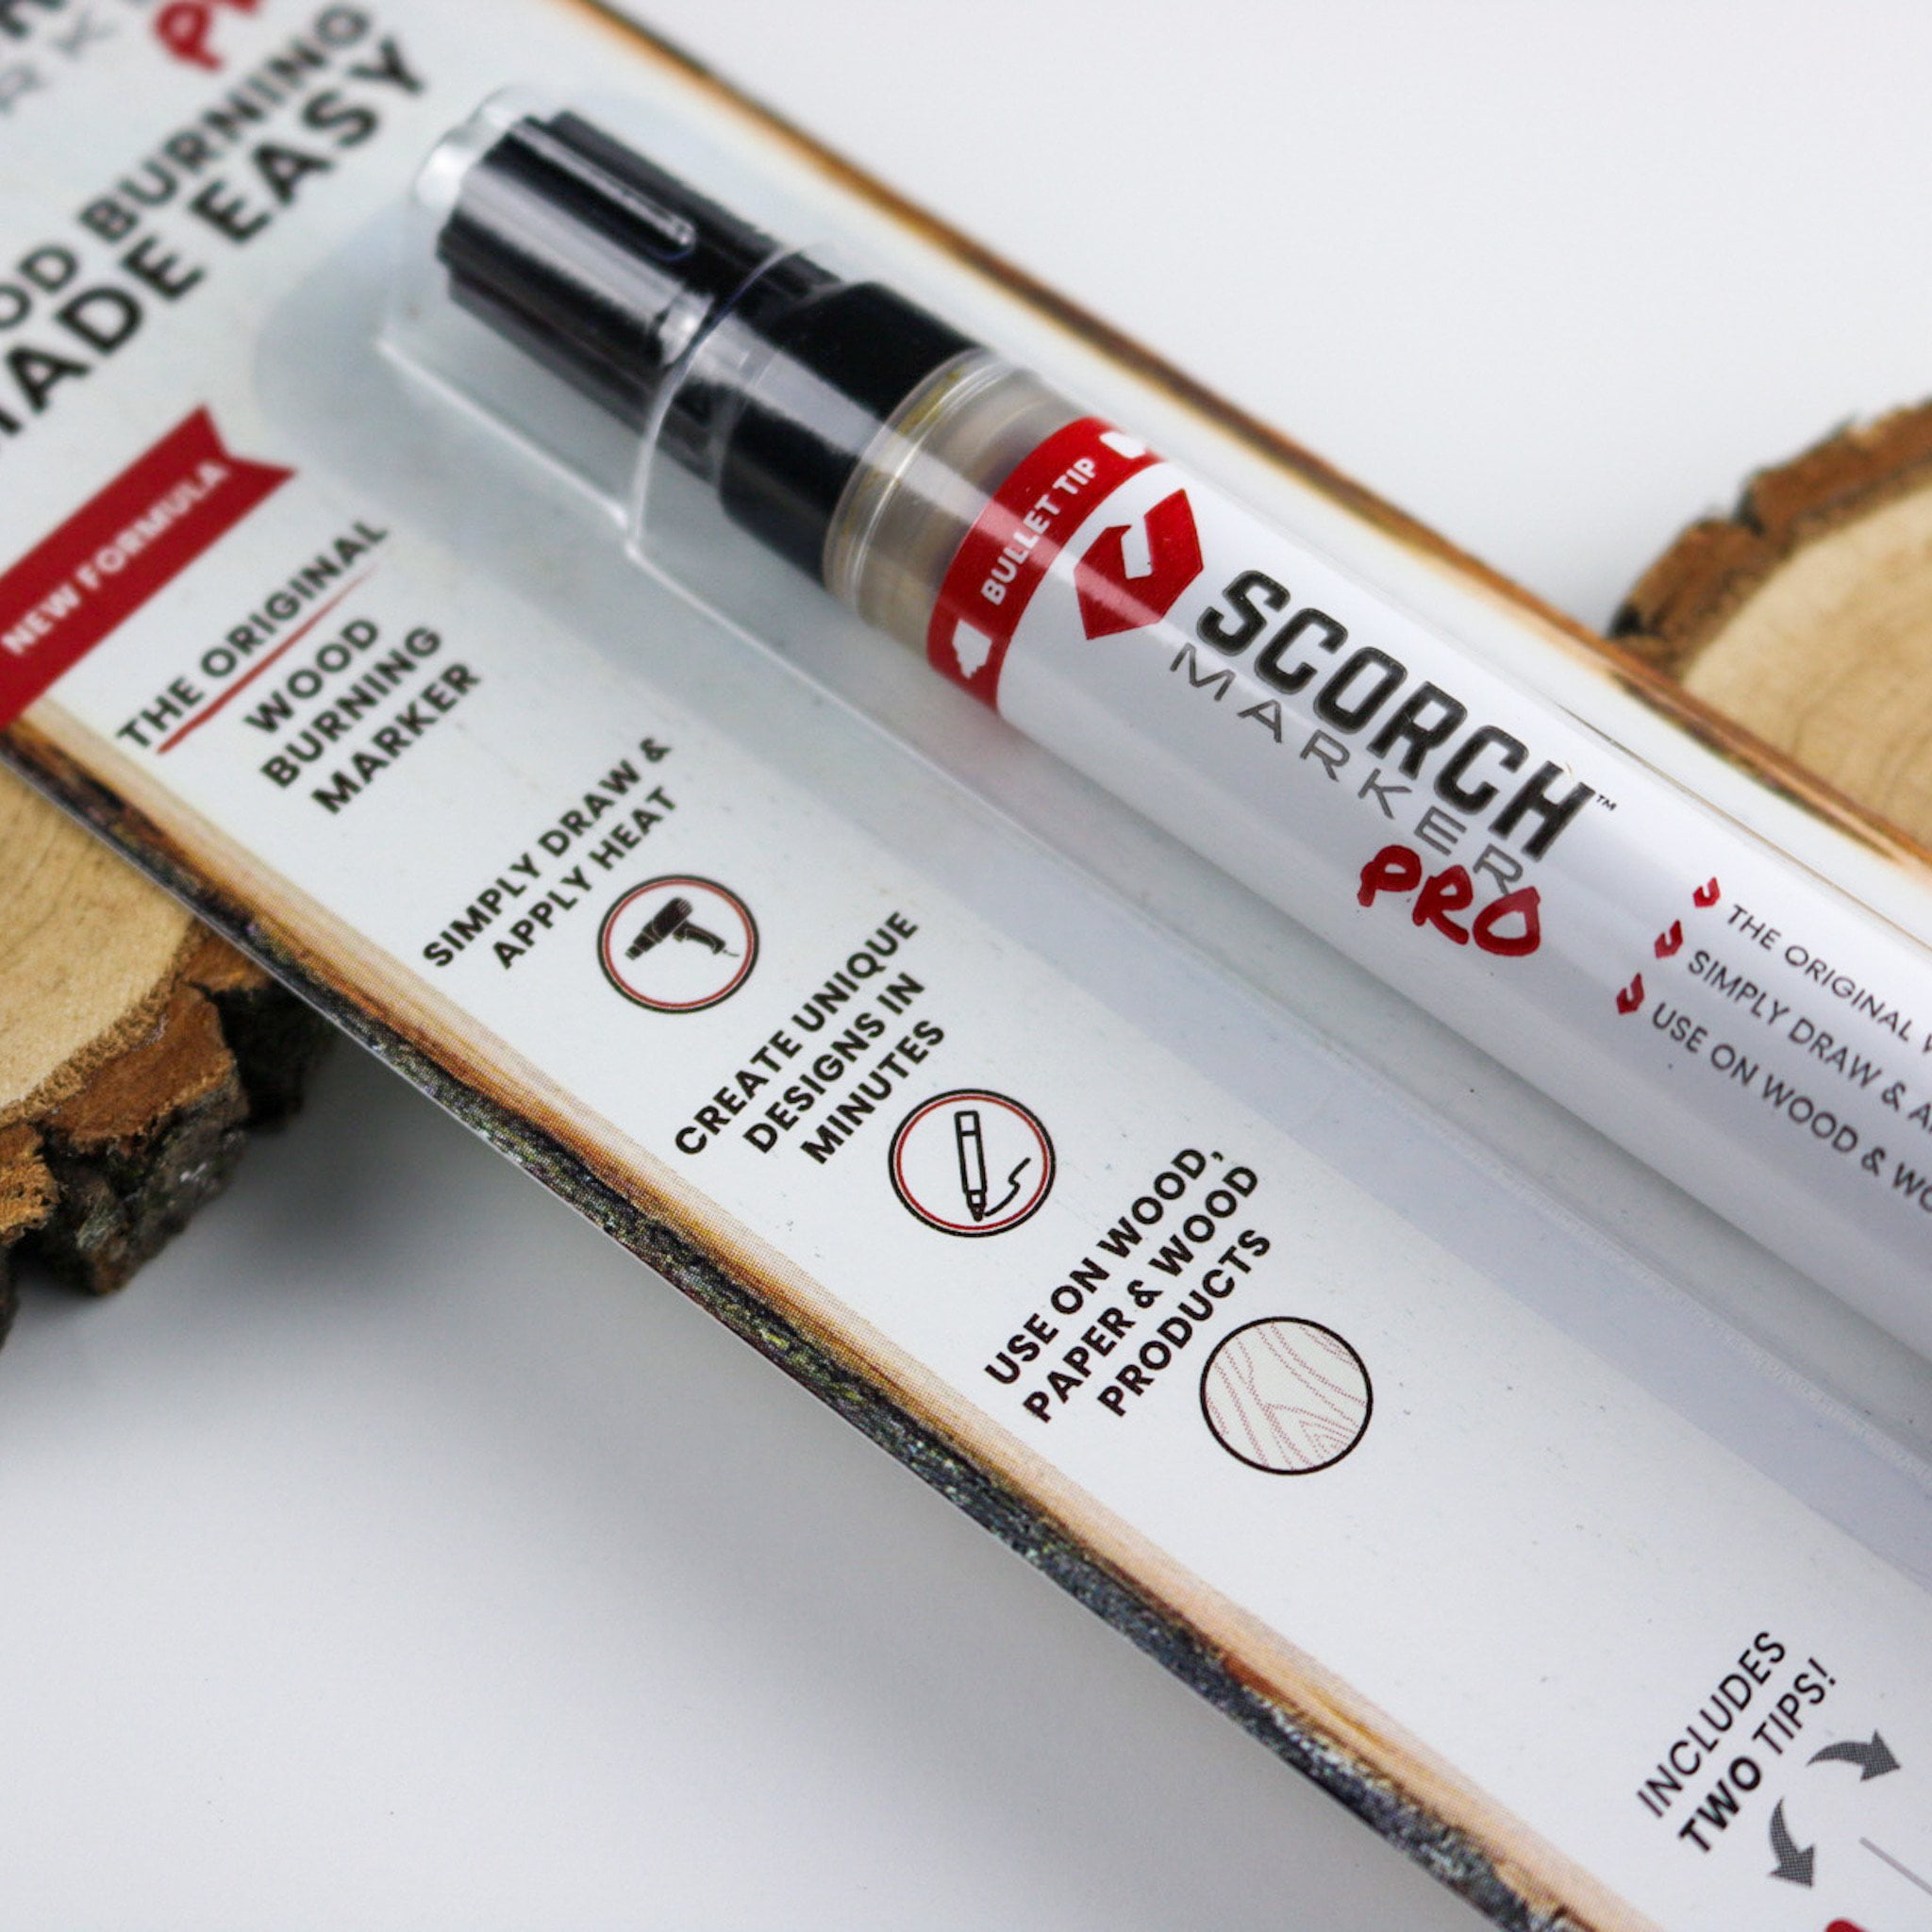 new scorch pen marker-flysea pen wood